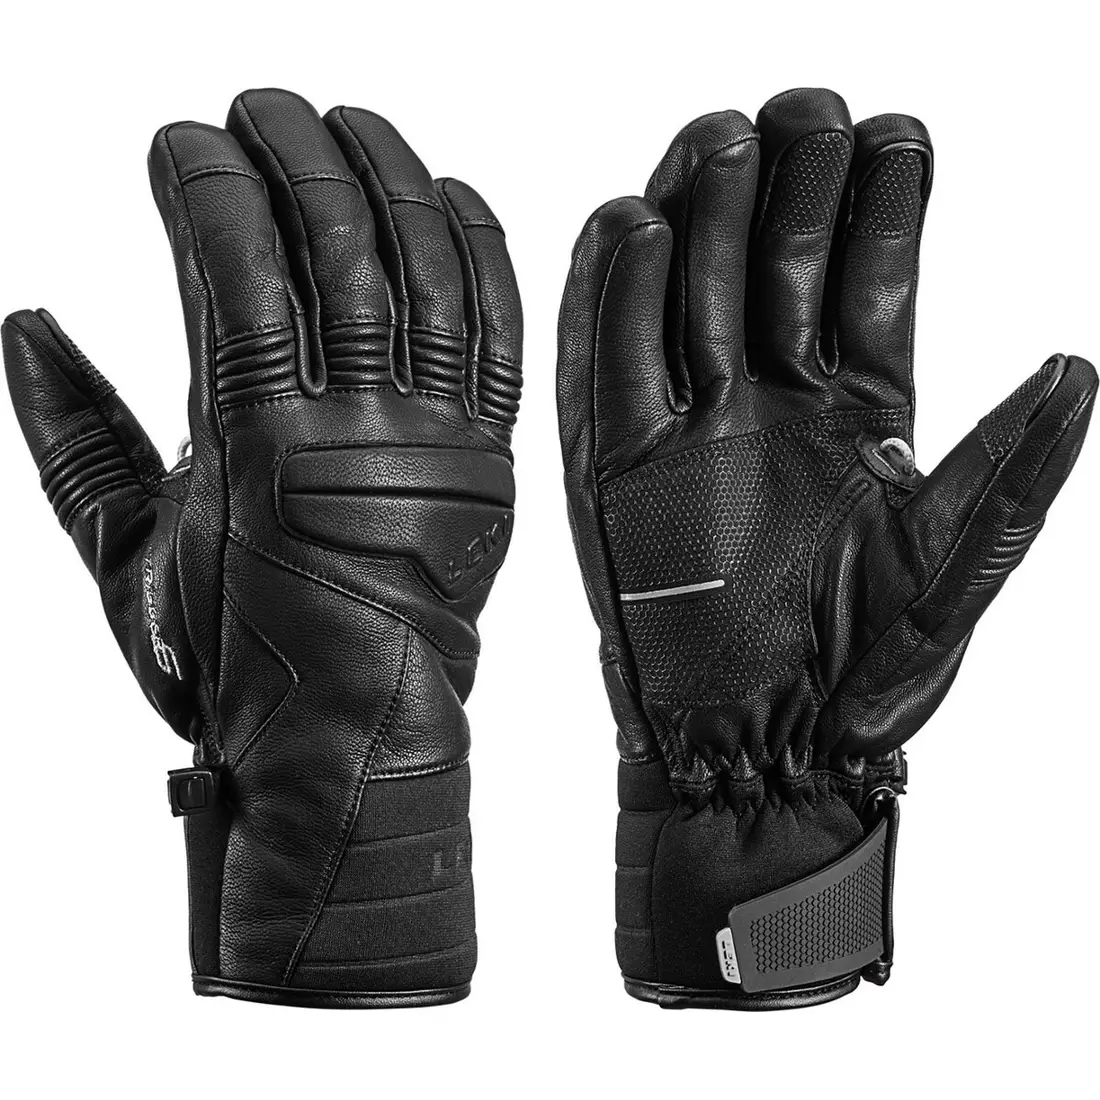 LEKI lyžiarske rukavice Progressive 9 S MF, black, 643880301080